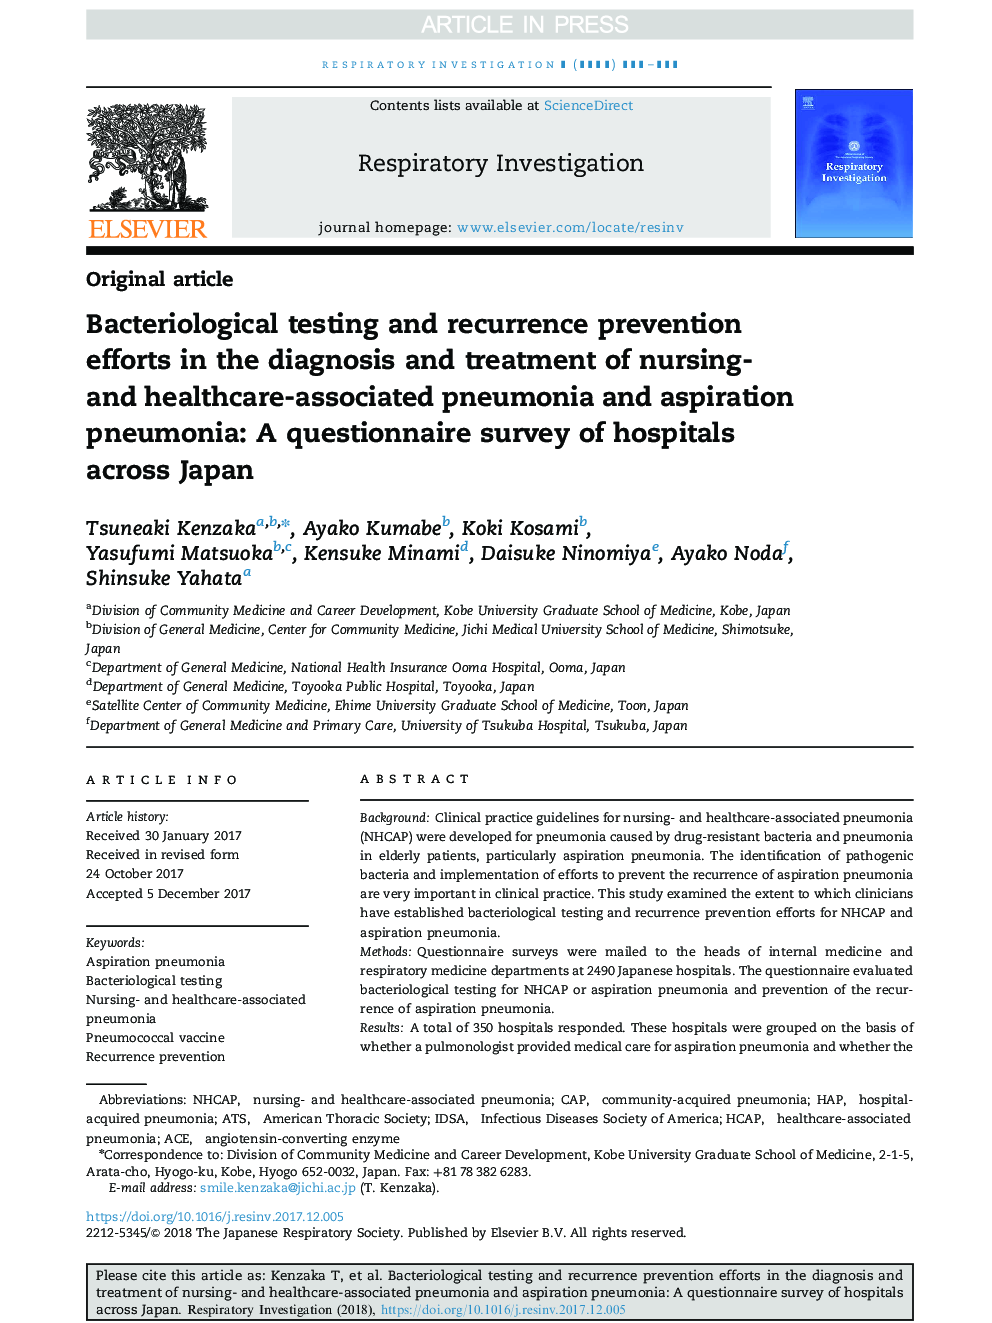 آزمایش باکتریولوژیک و پیشگیری از عود بیماری در تشخیص و درمان پنومونی مرتبط با پرستاری و مراقبت های بهداشتی و پنومونی آسپیراسیون: یک پرسشنامه از بیمارستان های سراسر ژاپن 